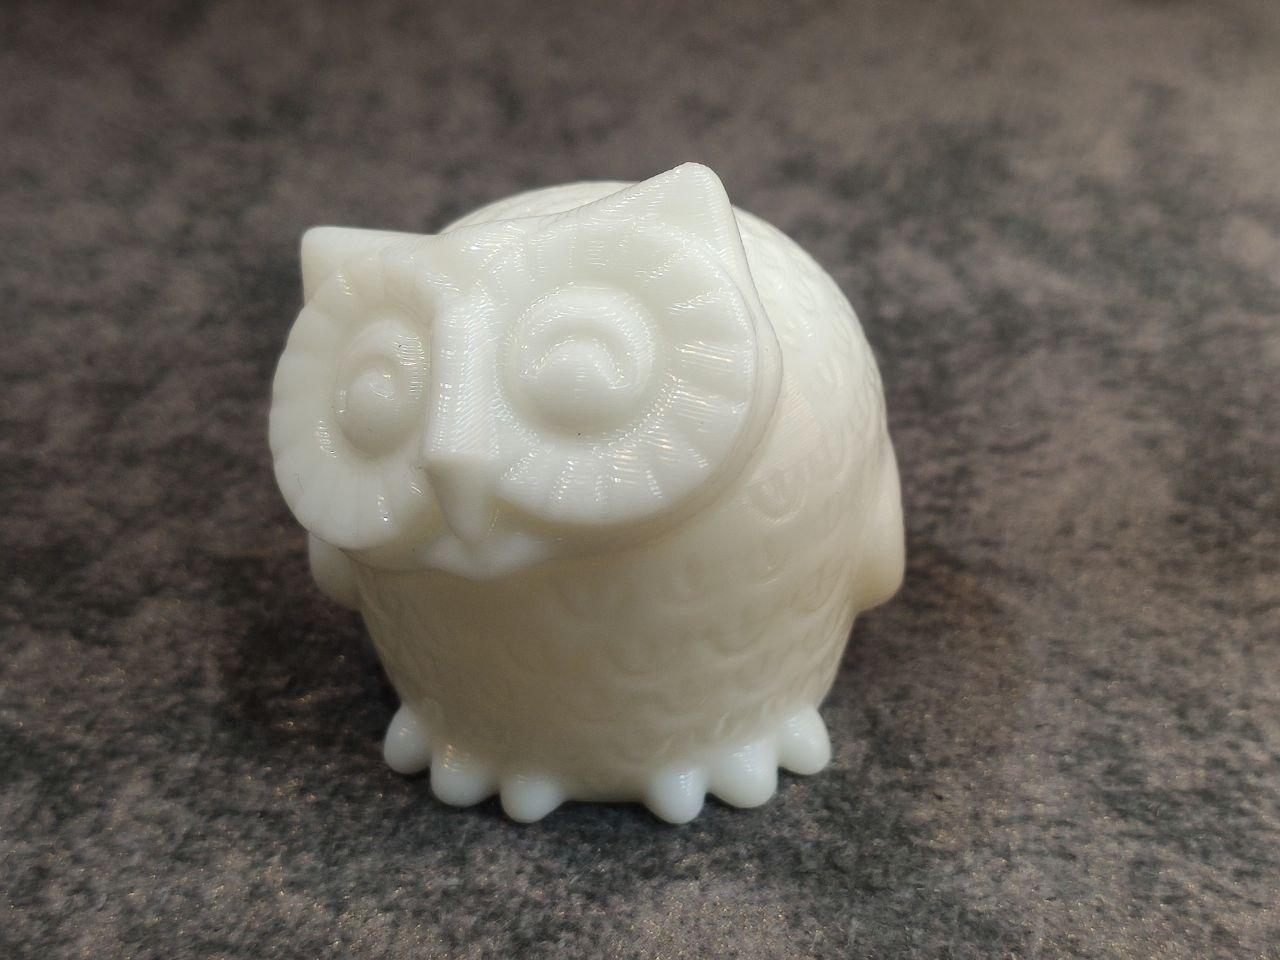 owl sculpture 3d model